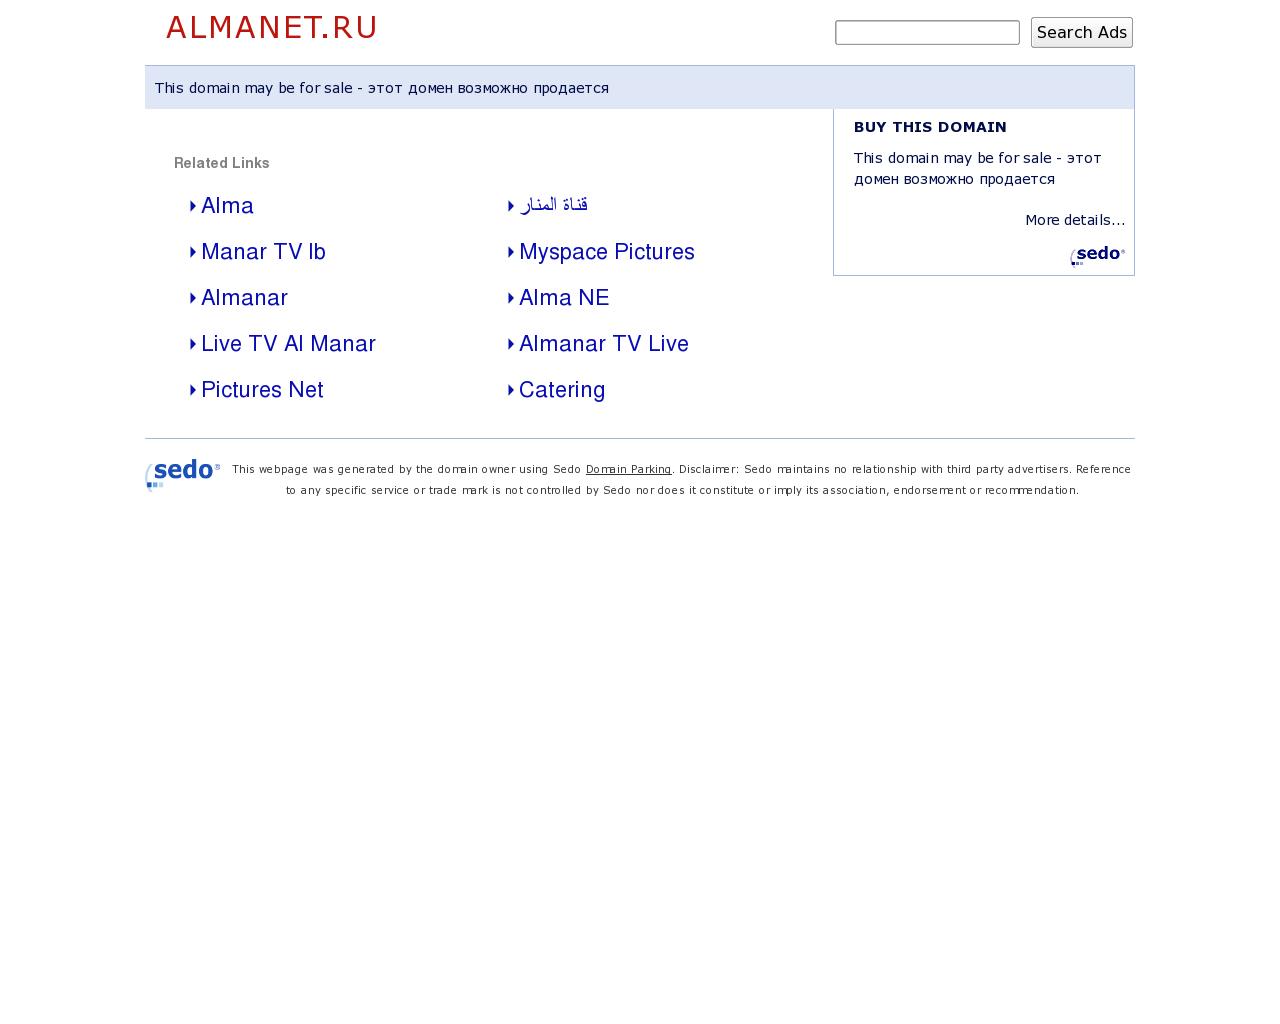 Изображение сайта almanet.ru в разрешении 1280x1024